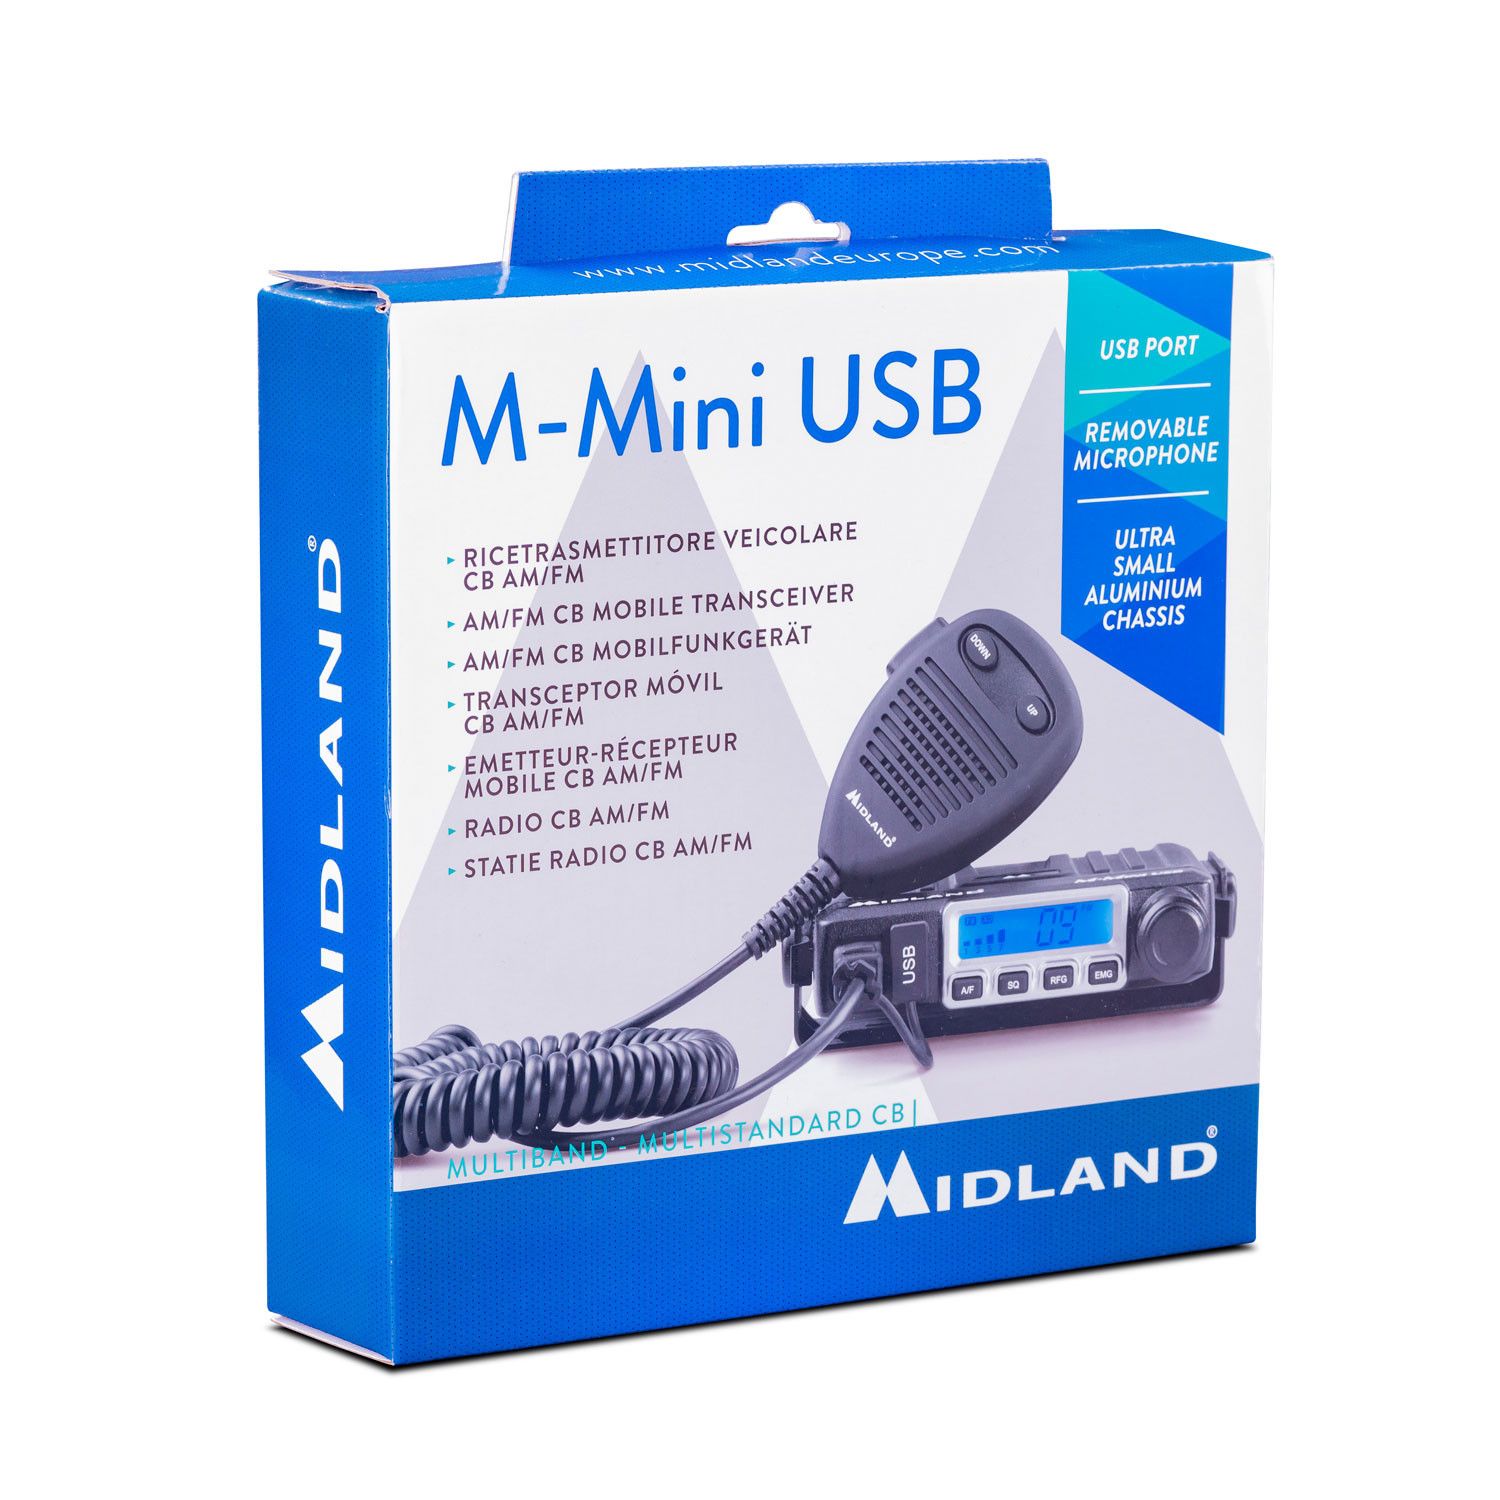 Midland M-Mini USB, CB-Funkgerät Multistandard  - Bild 1